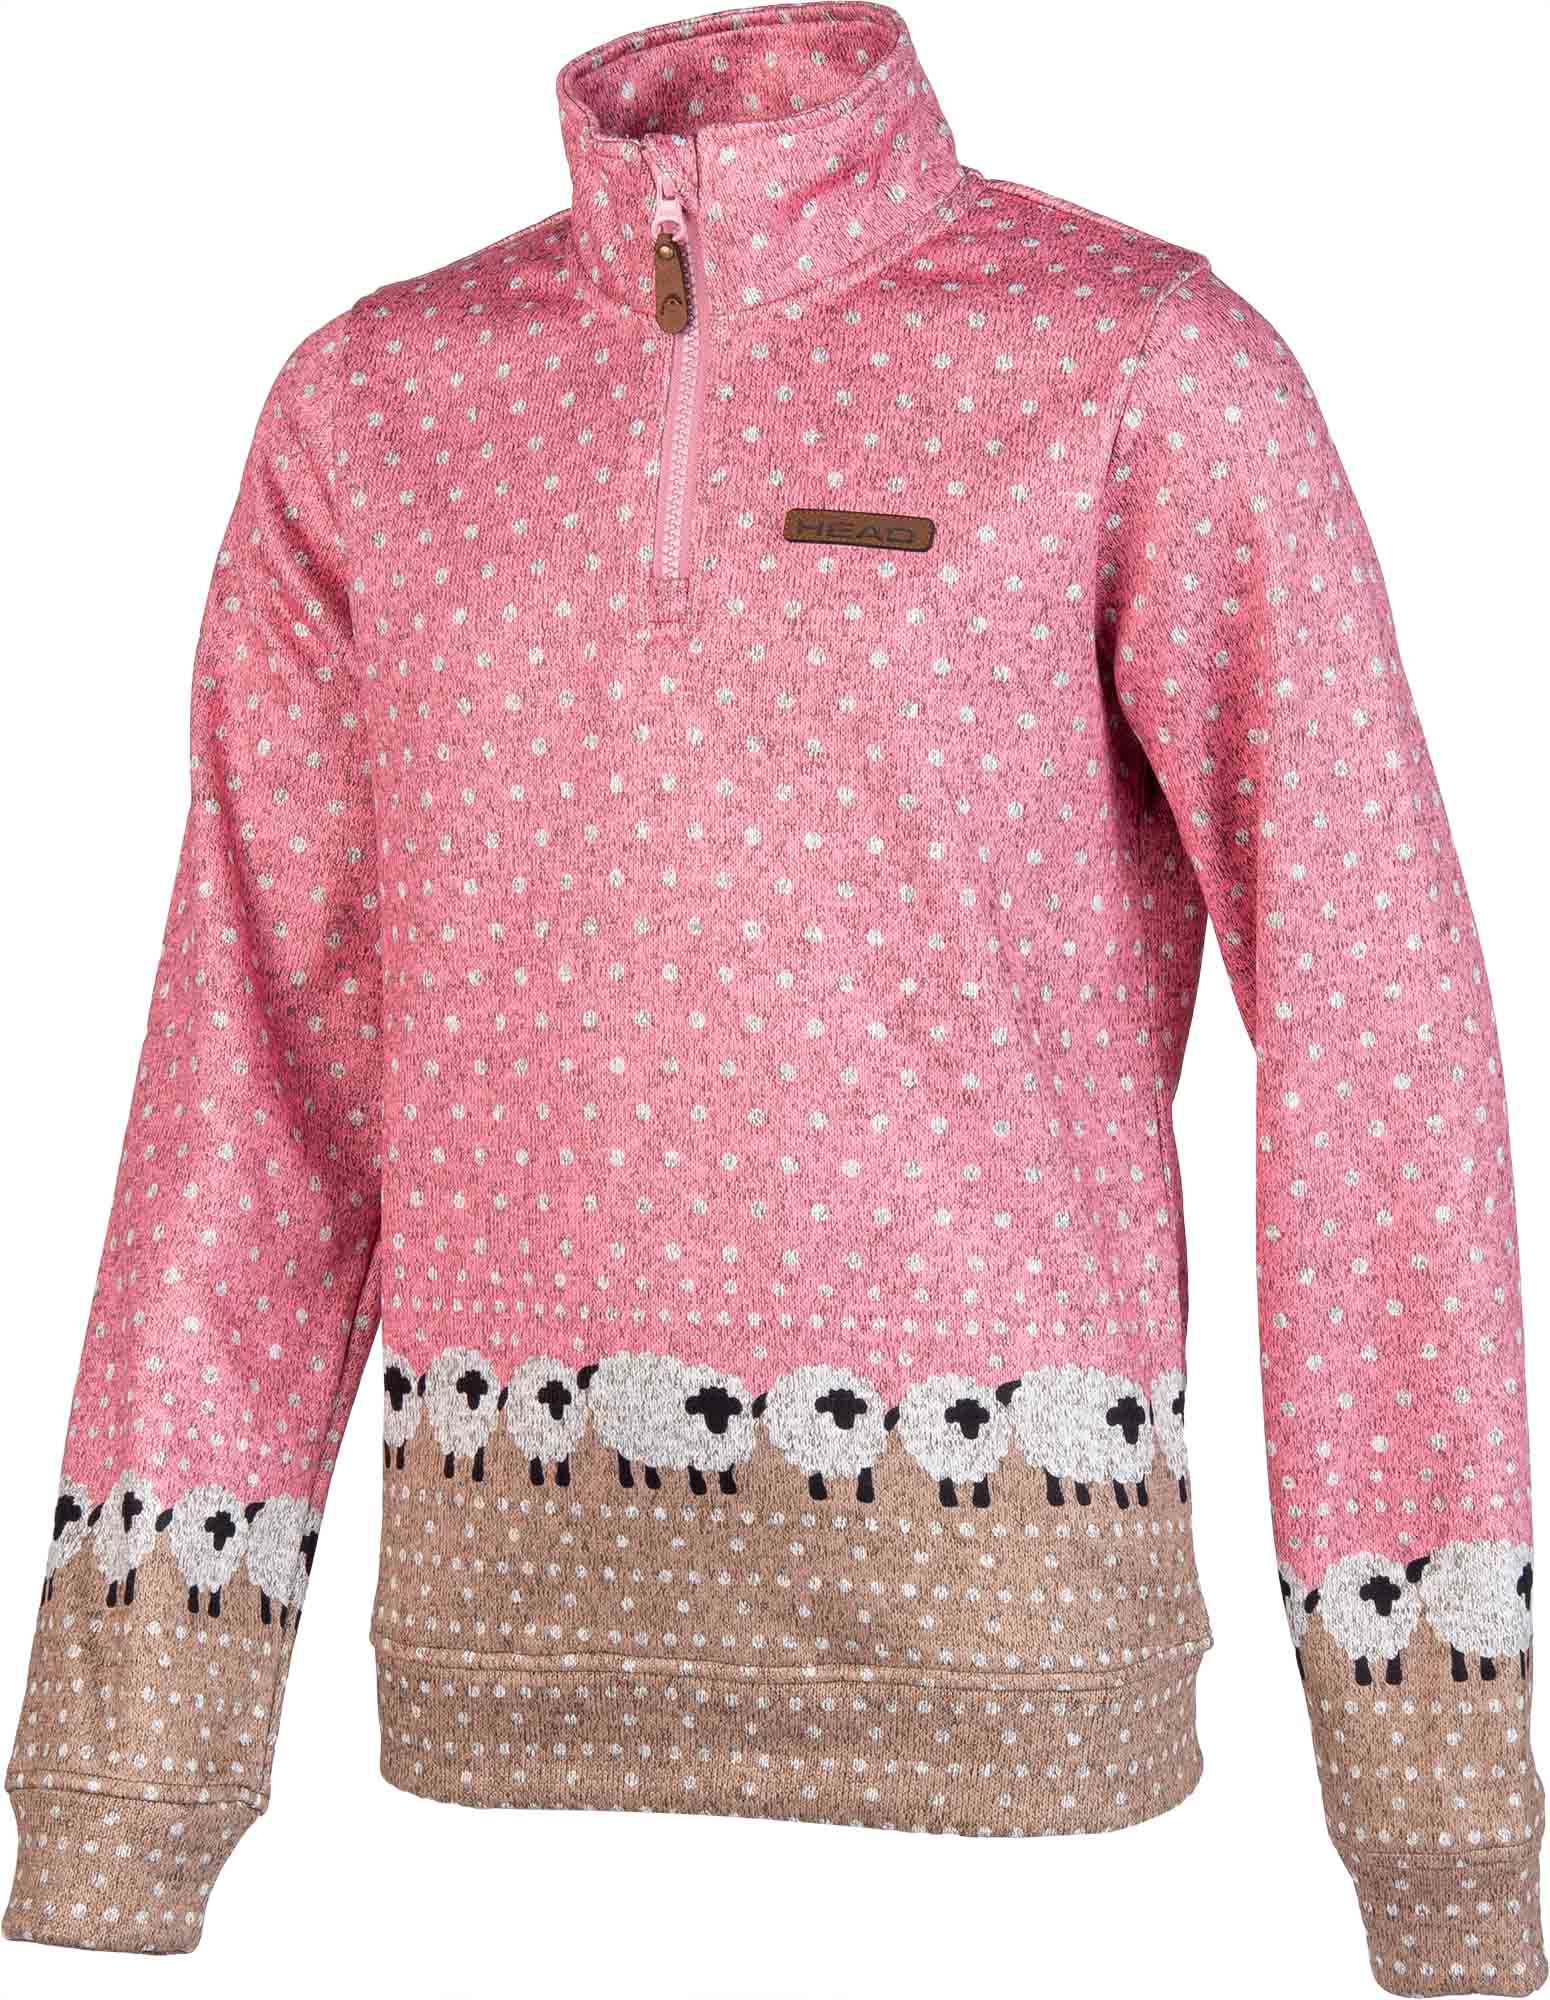 Girls' fleece sweatshirt